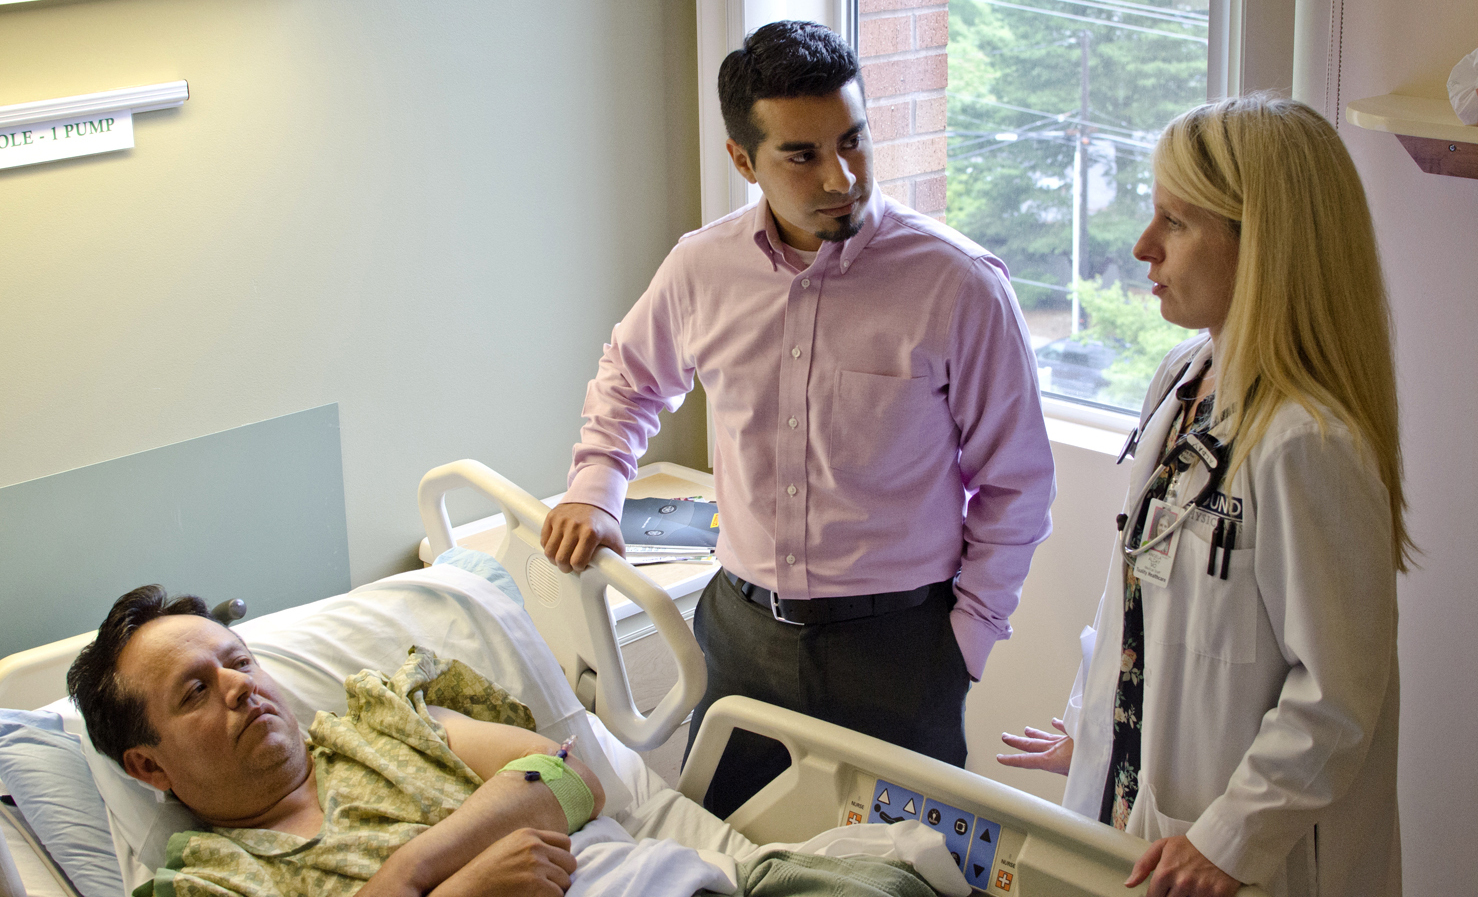 medical interpreter facilitates conversation between hospital patient and provider